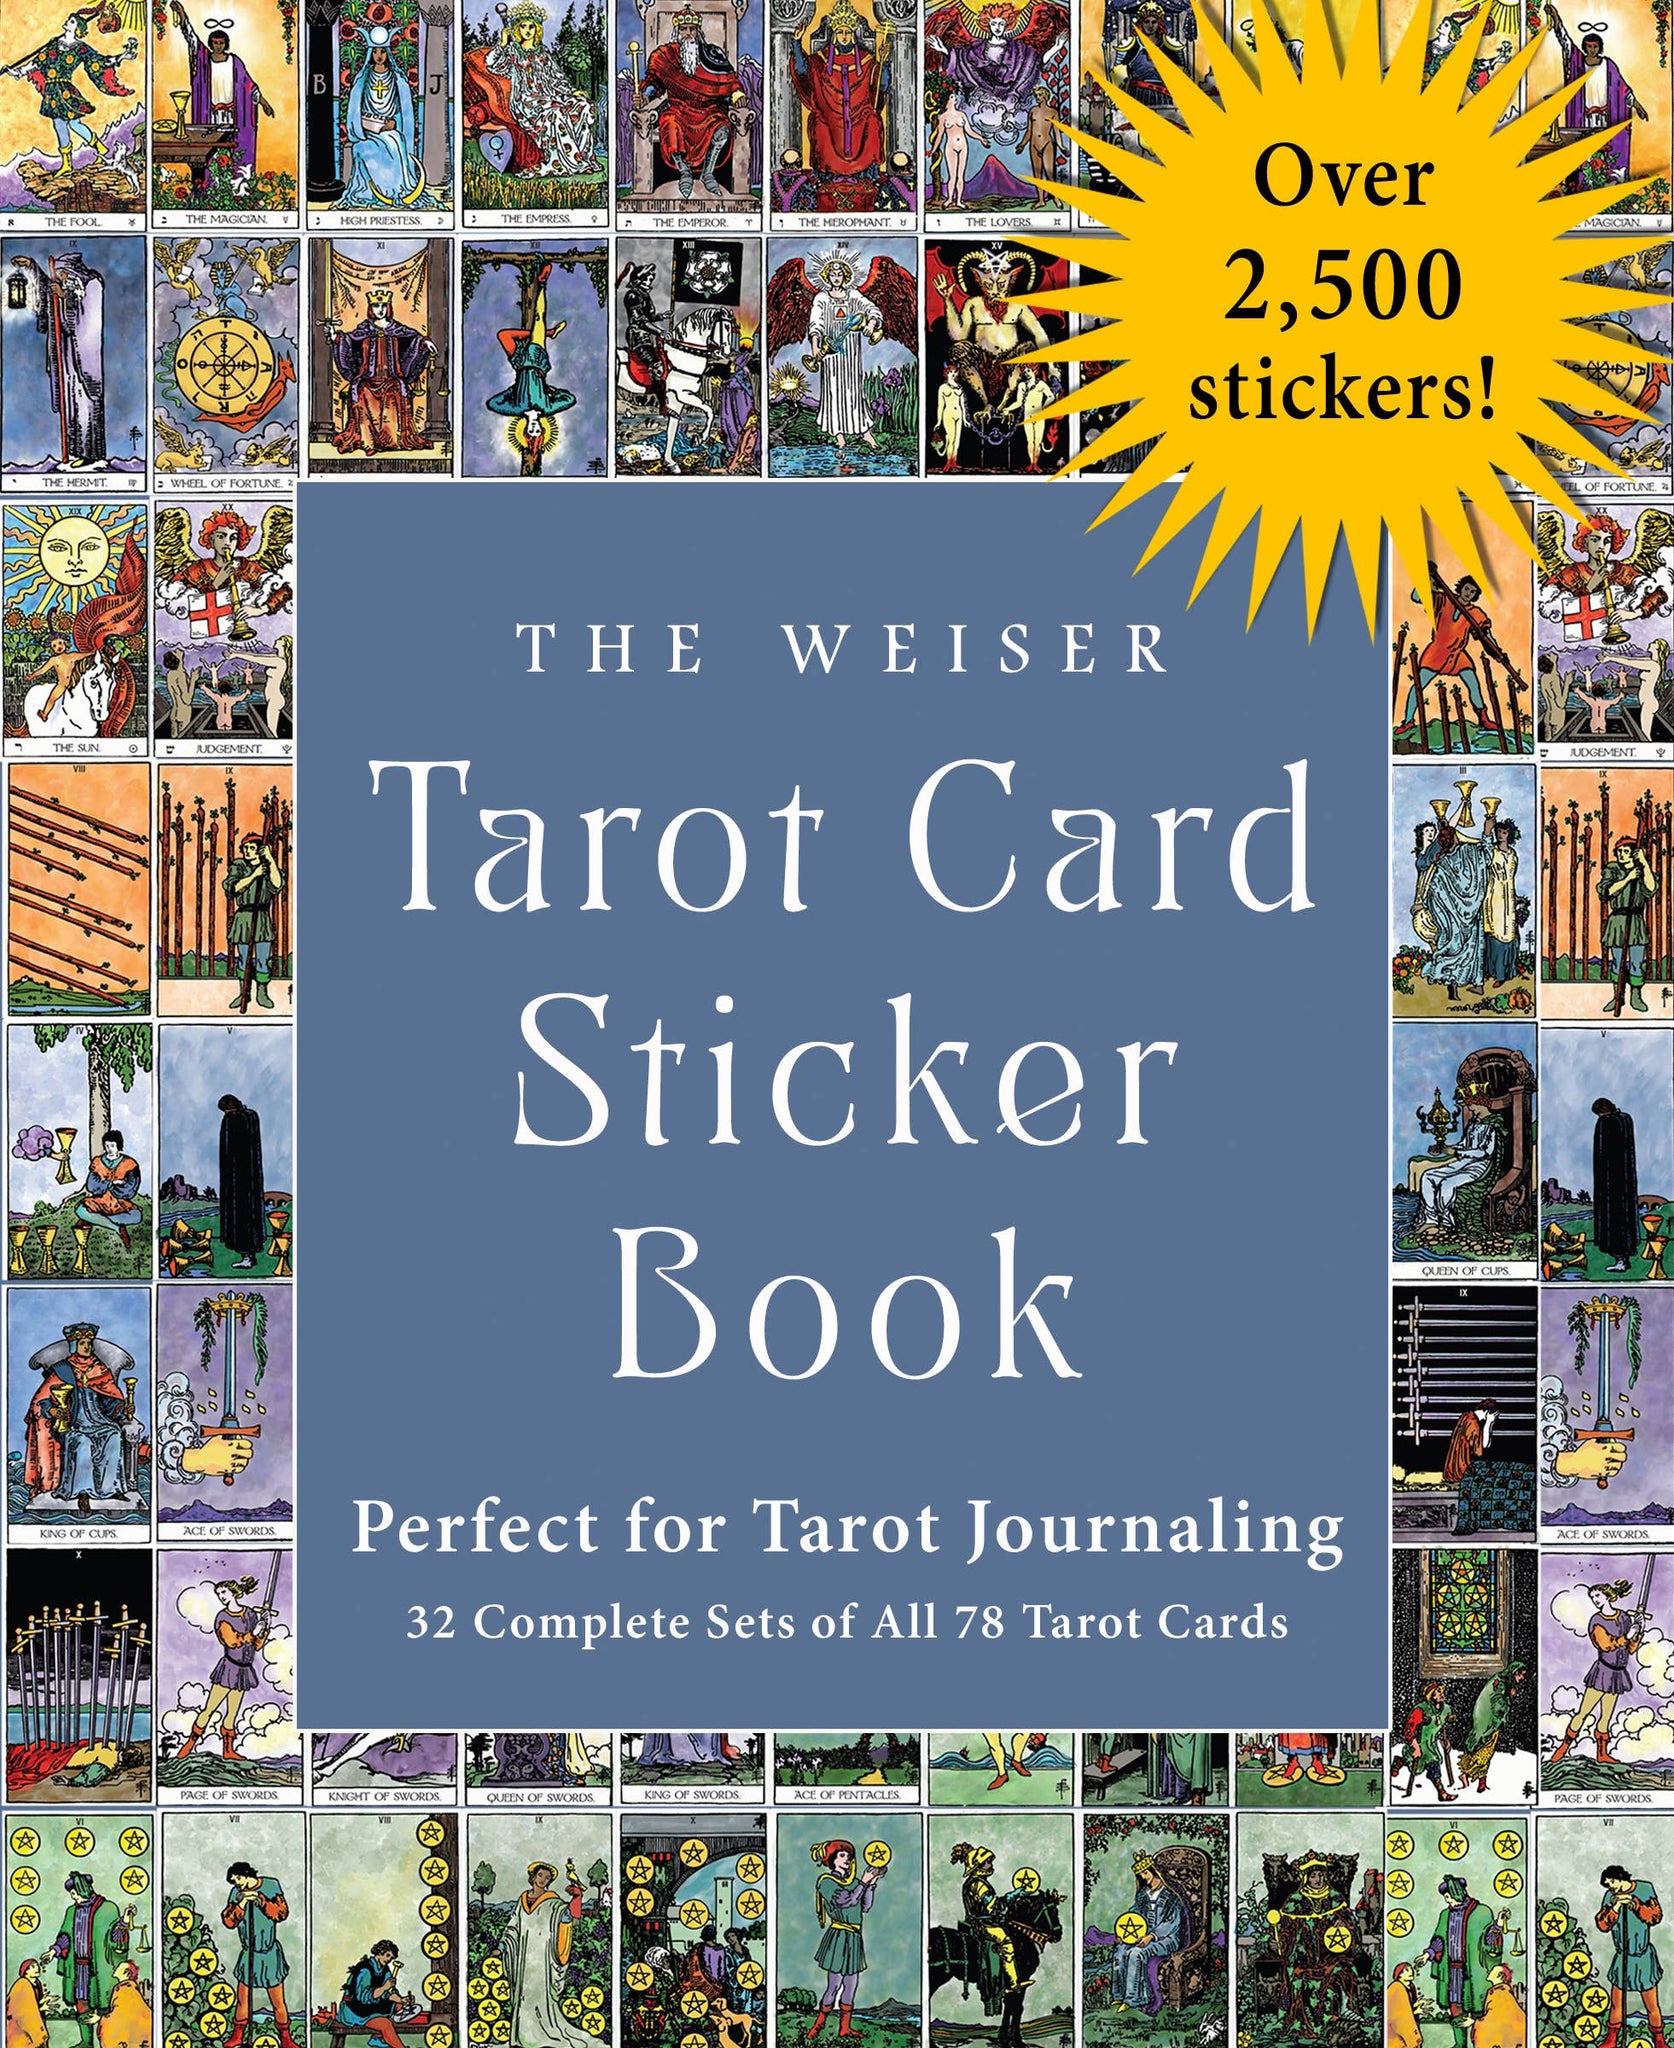 The Weiser Tarot Card Sticker Book: Over 2,500 Stickers